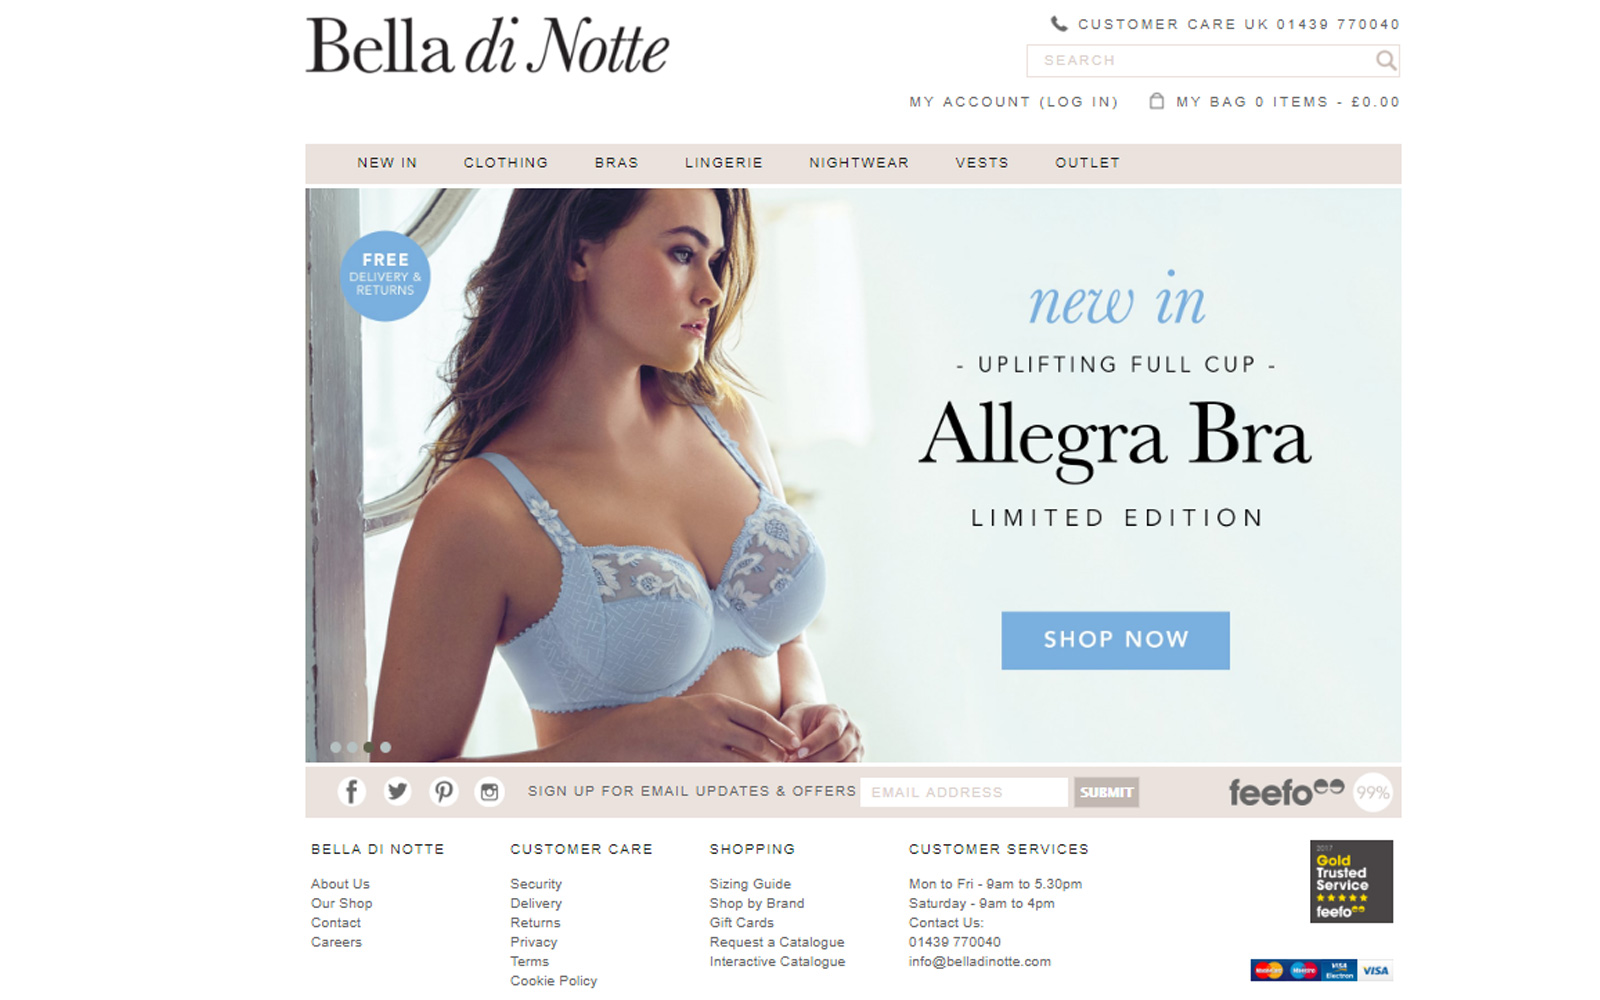 Bella Di Notte E Commerce Project Management